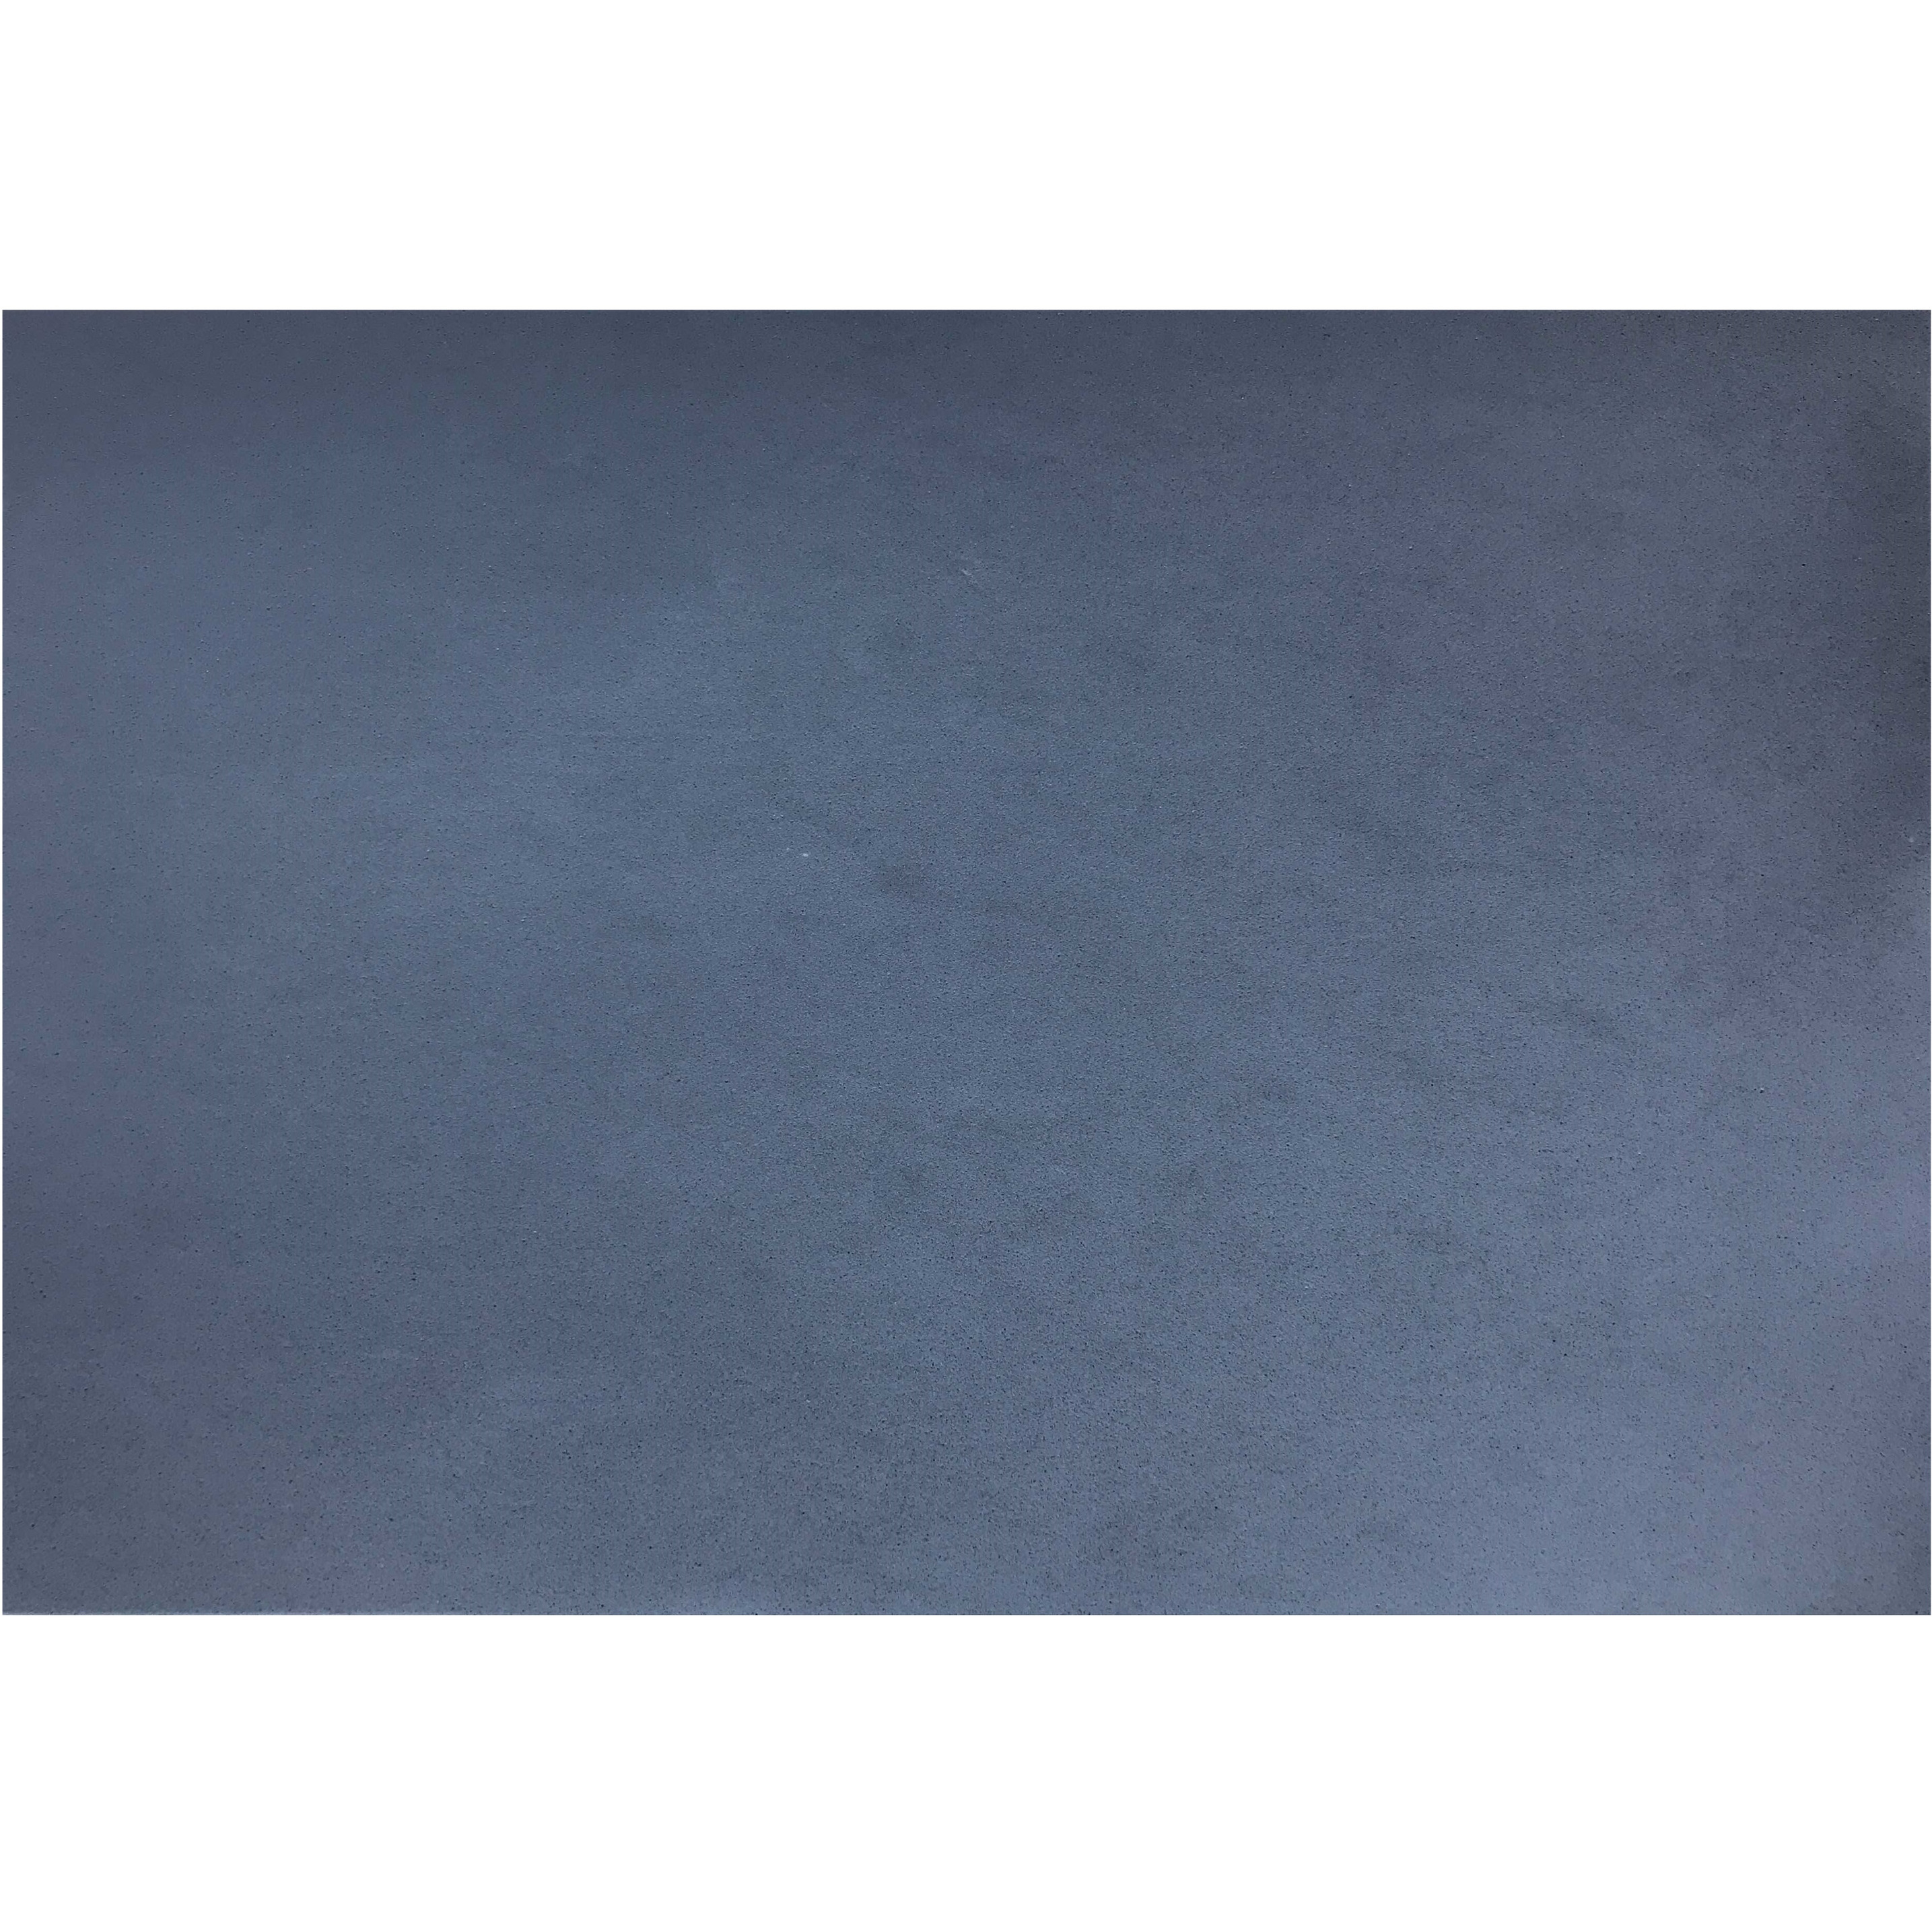 Crepla knutsel foam rubber grijs 20 x 30 cm